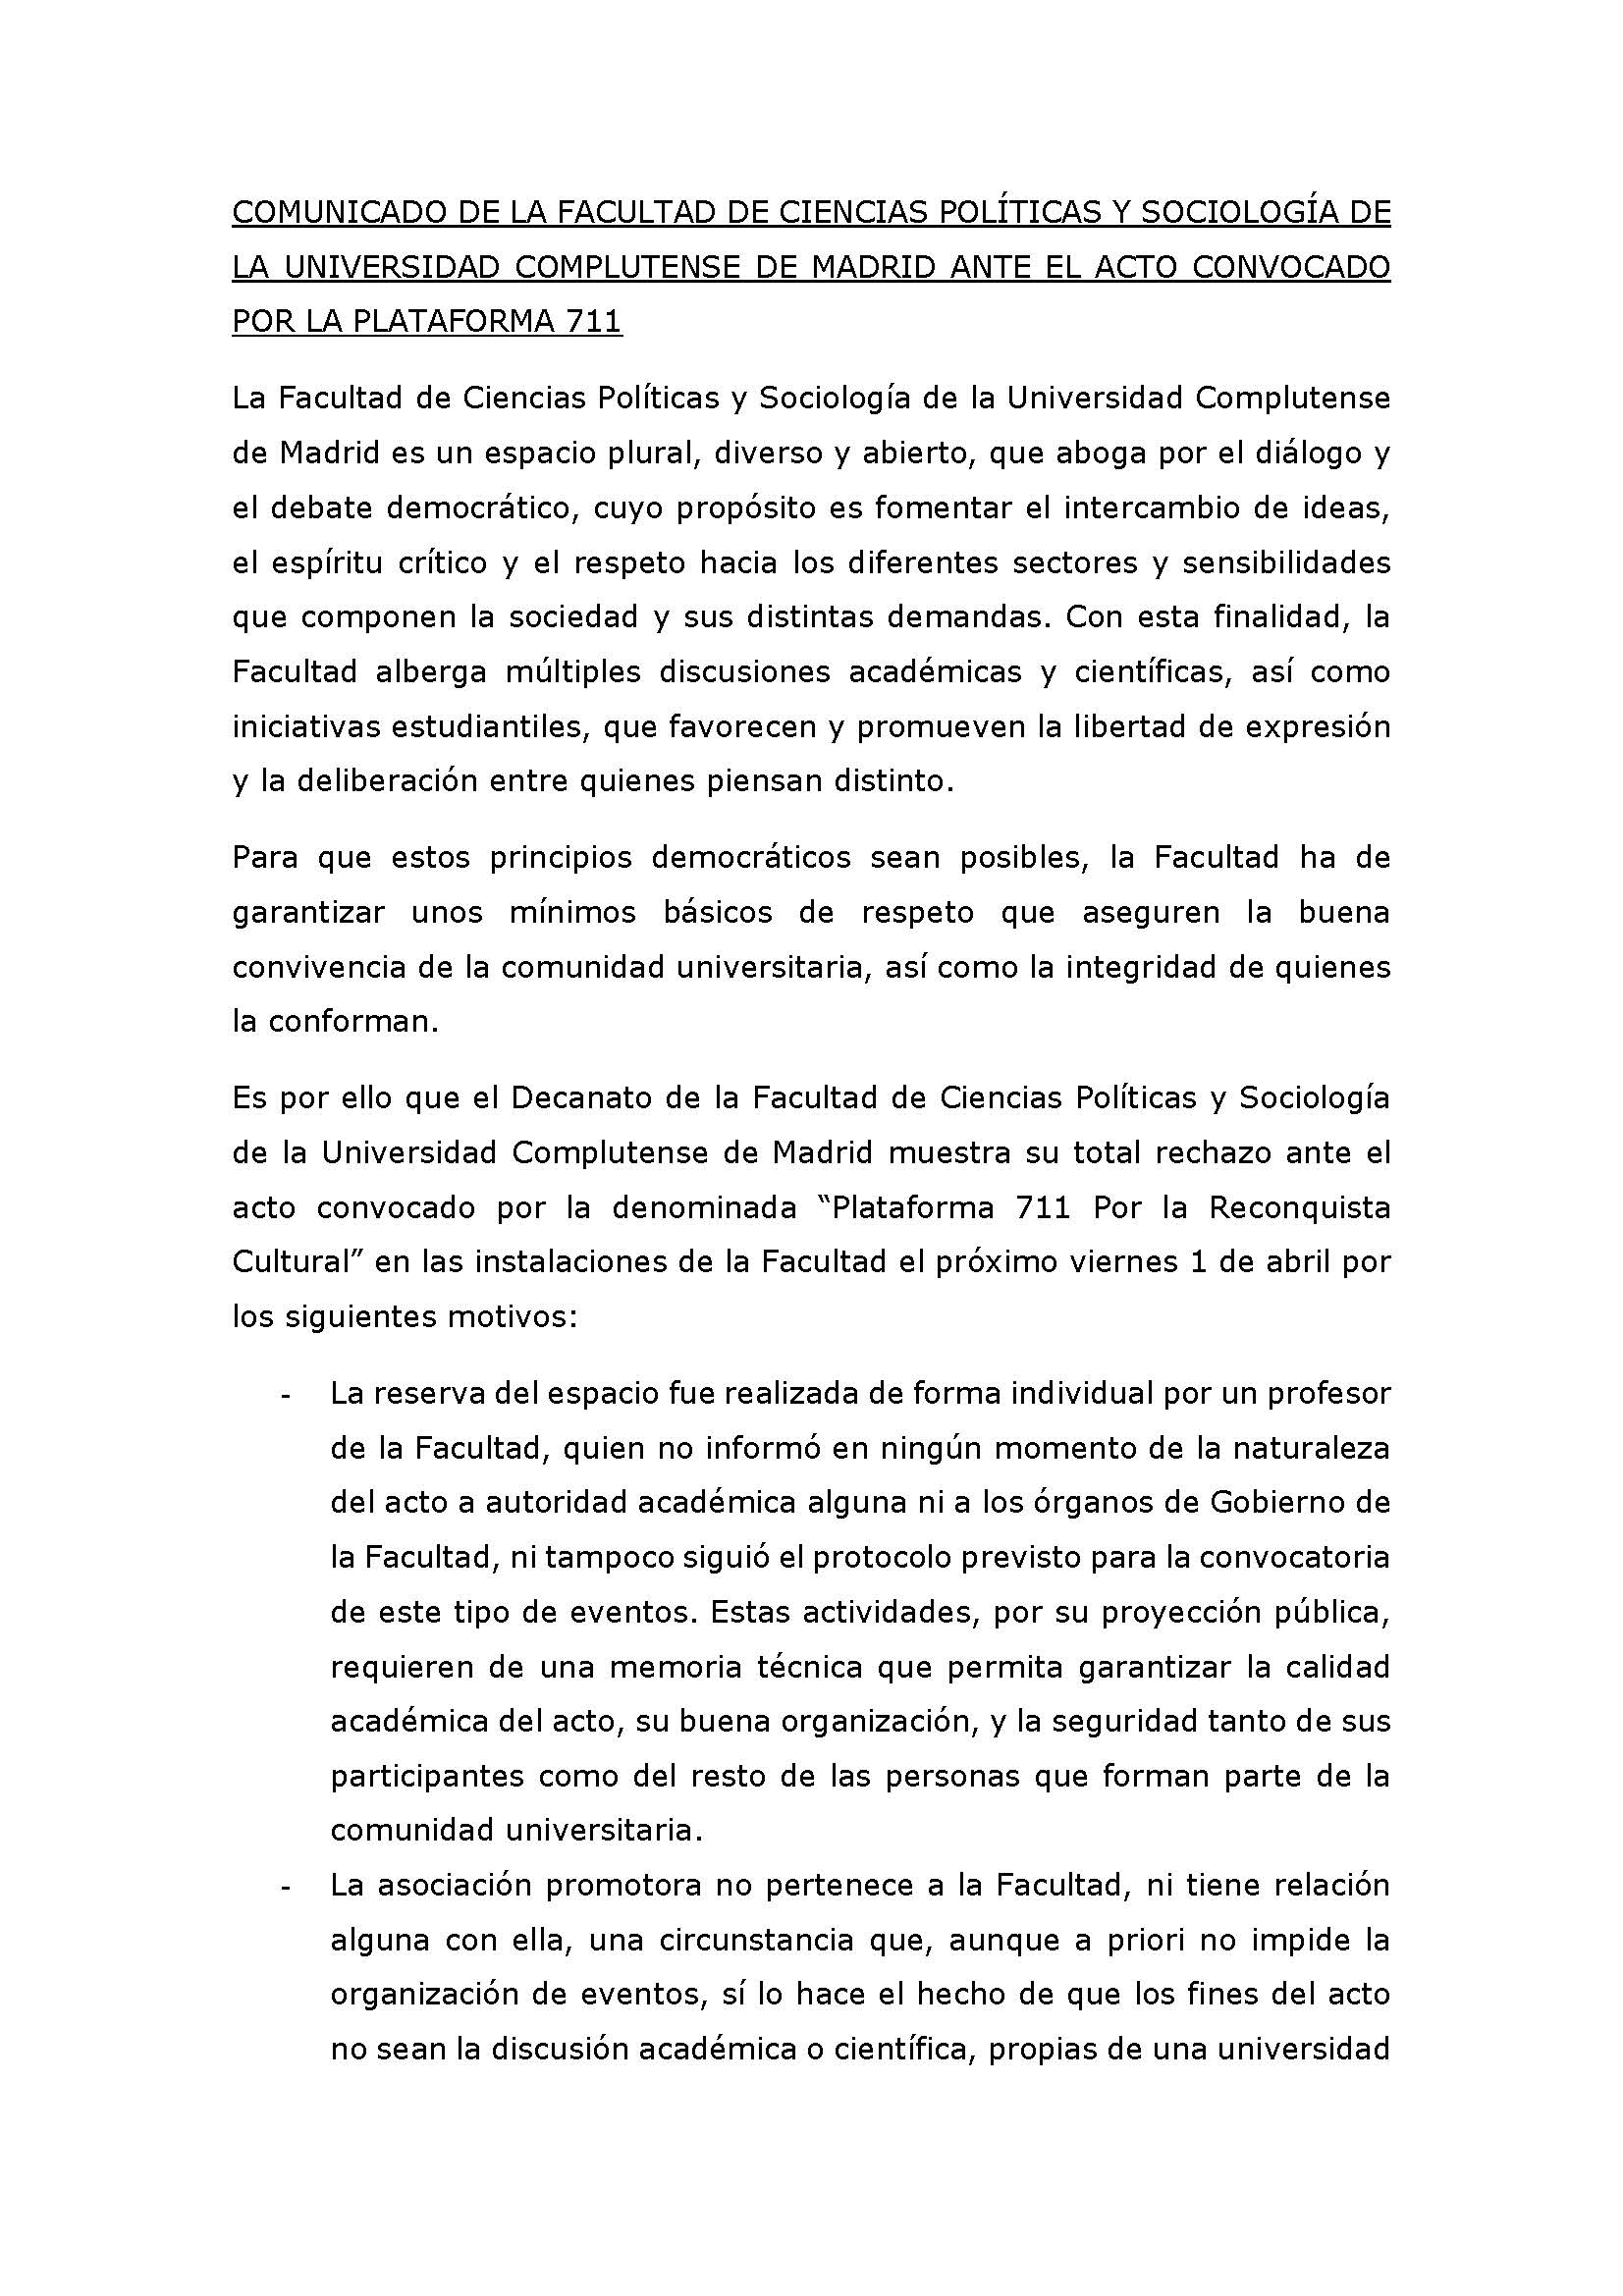 COMUNICADO DE LA FACULTAD DE CIENCIAS POLÍTICAS Y SOCIOLOGÍA DE LA UNIVERSIDAD COMPLUTENSE DE MADRID